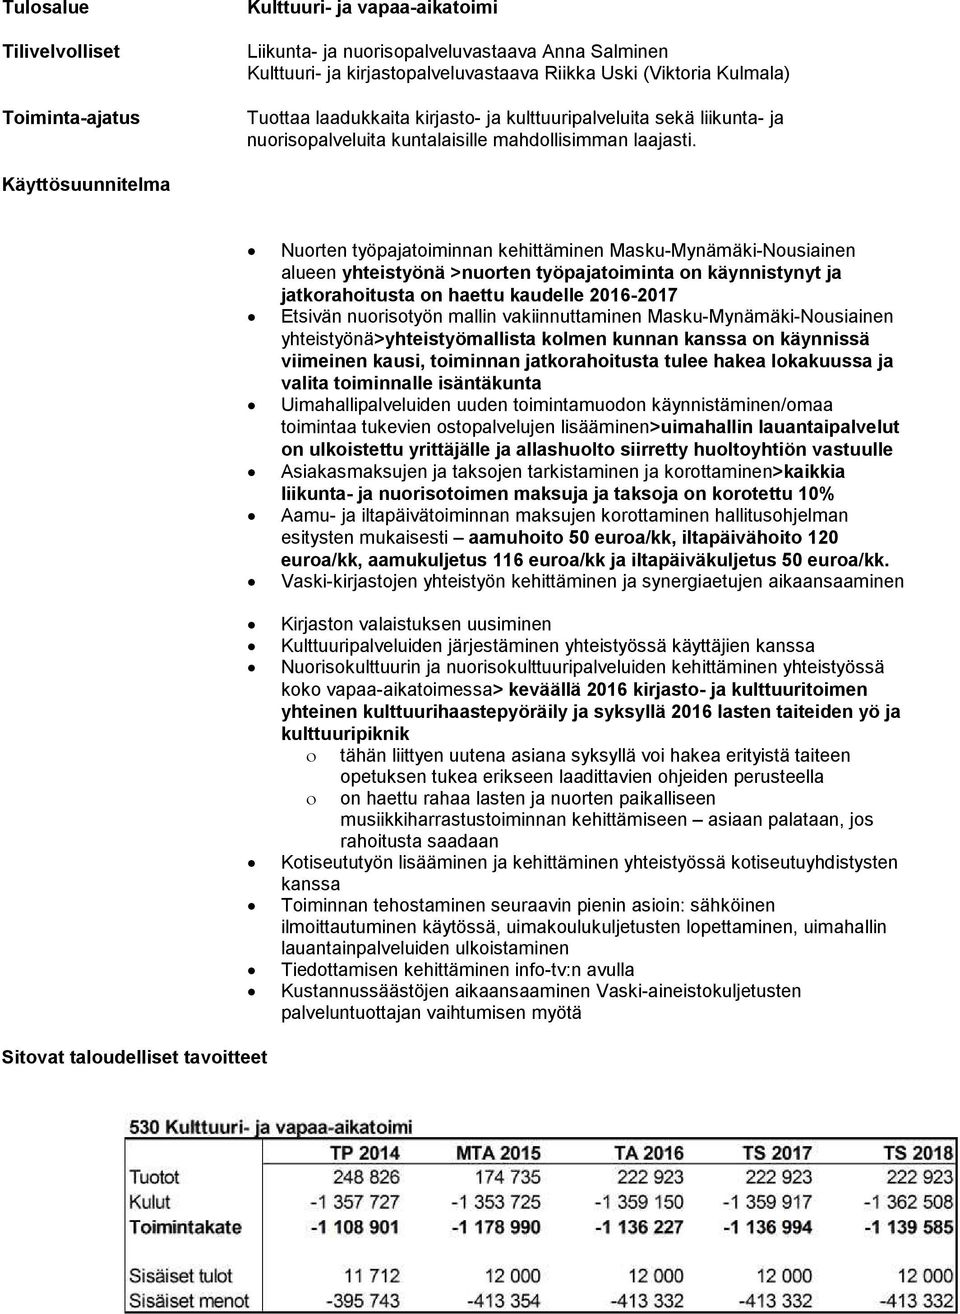 Käyttösuunnitelma Nuorten työpajatoiminnan kehittäminen Masku-Mynämäki-Nousiainen alueen yhteistyönä >nuorten työpajatoiminta on käynnistynyt ja jatkorahoitusta on haettu kaudelle 2016-2017 Etsivän